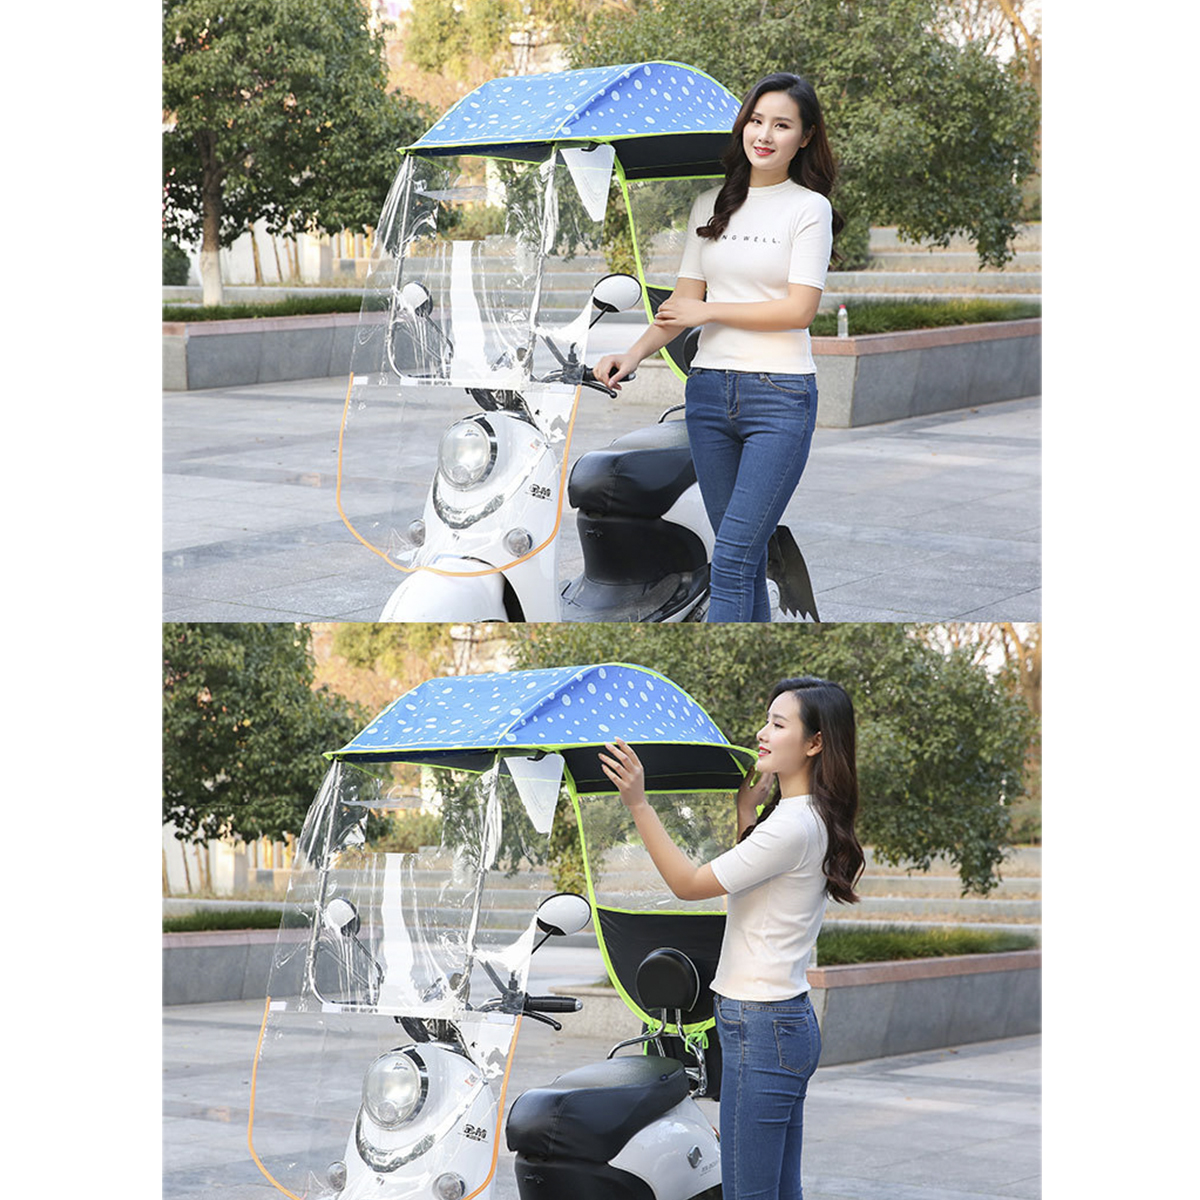 Tenda de chuva scooter elétrica solar proteção contra chuva para motocicleta toldo toldo pára-brisa